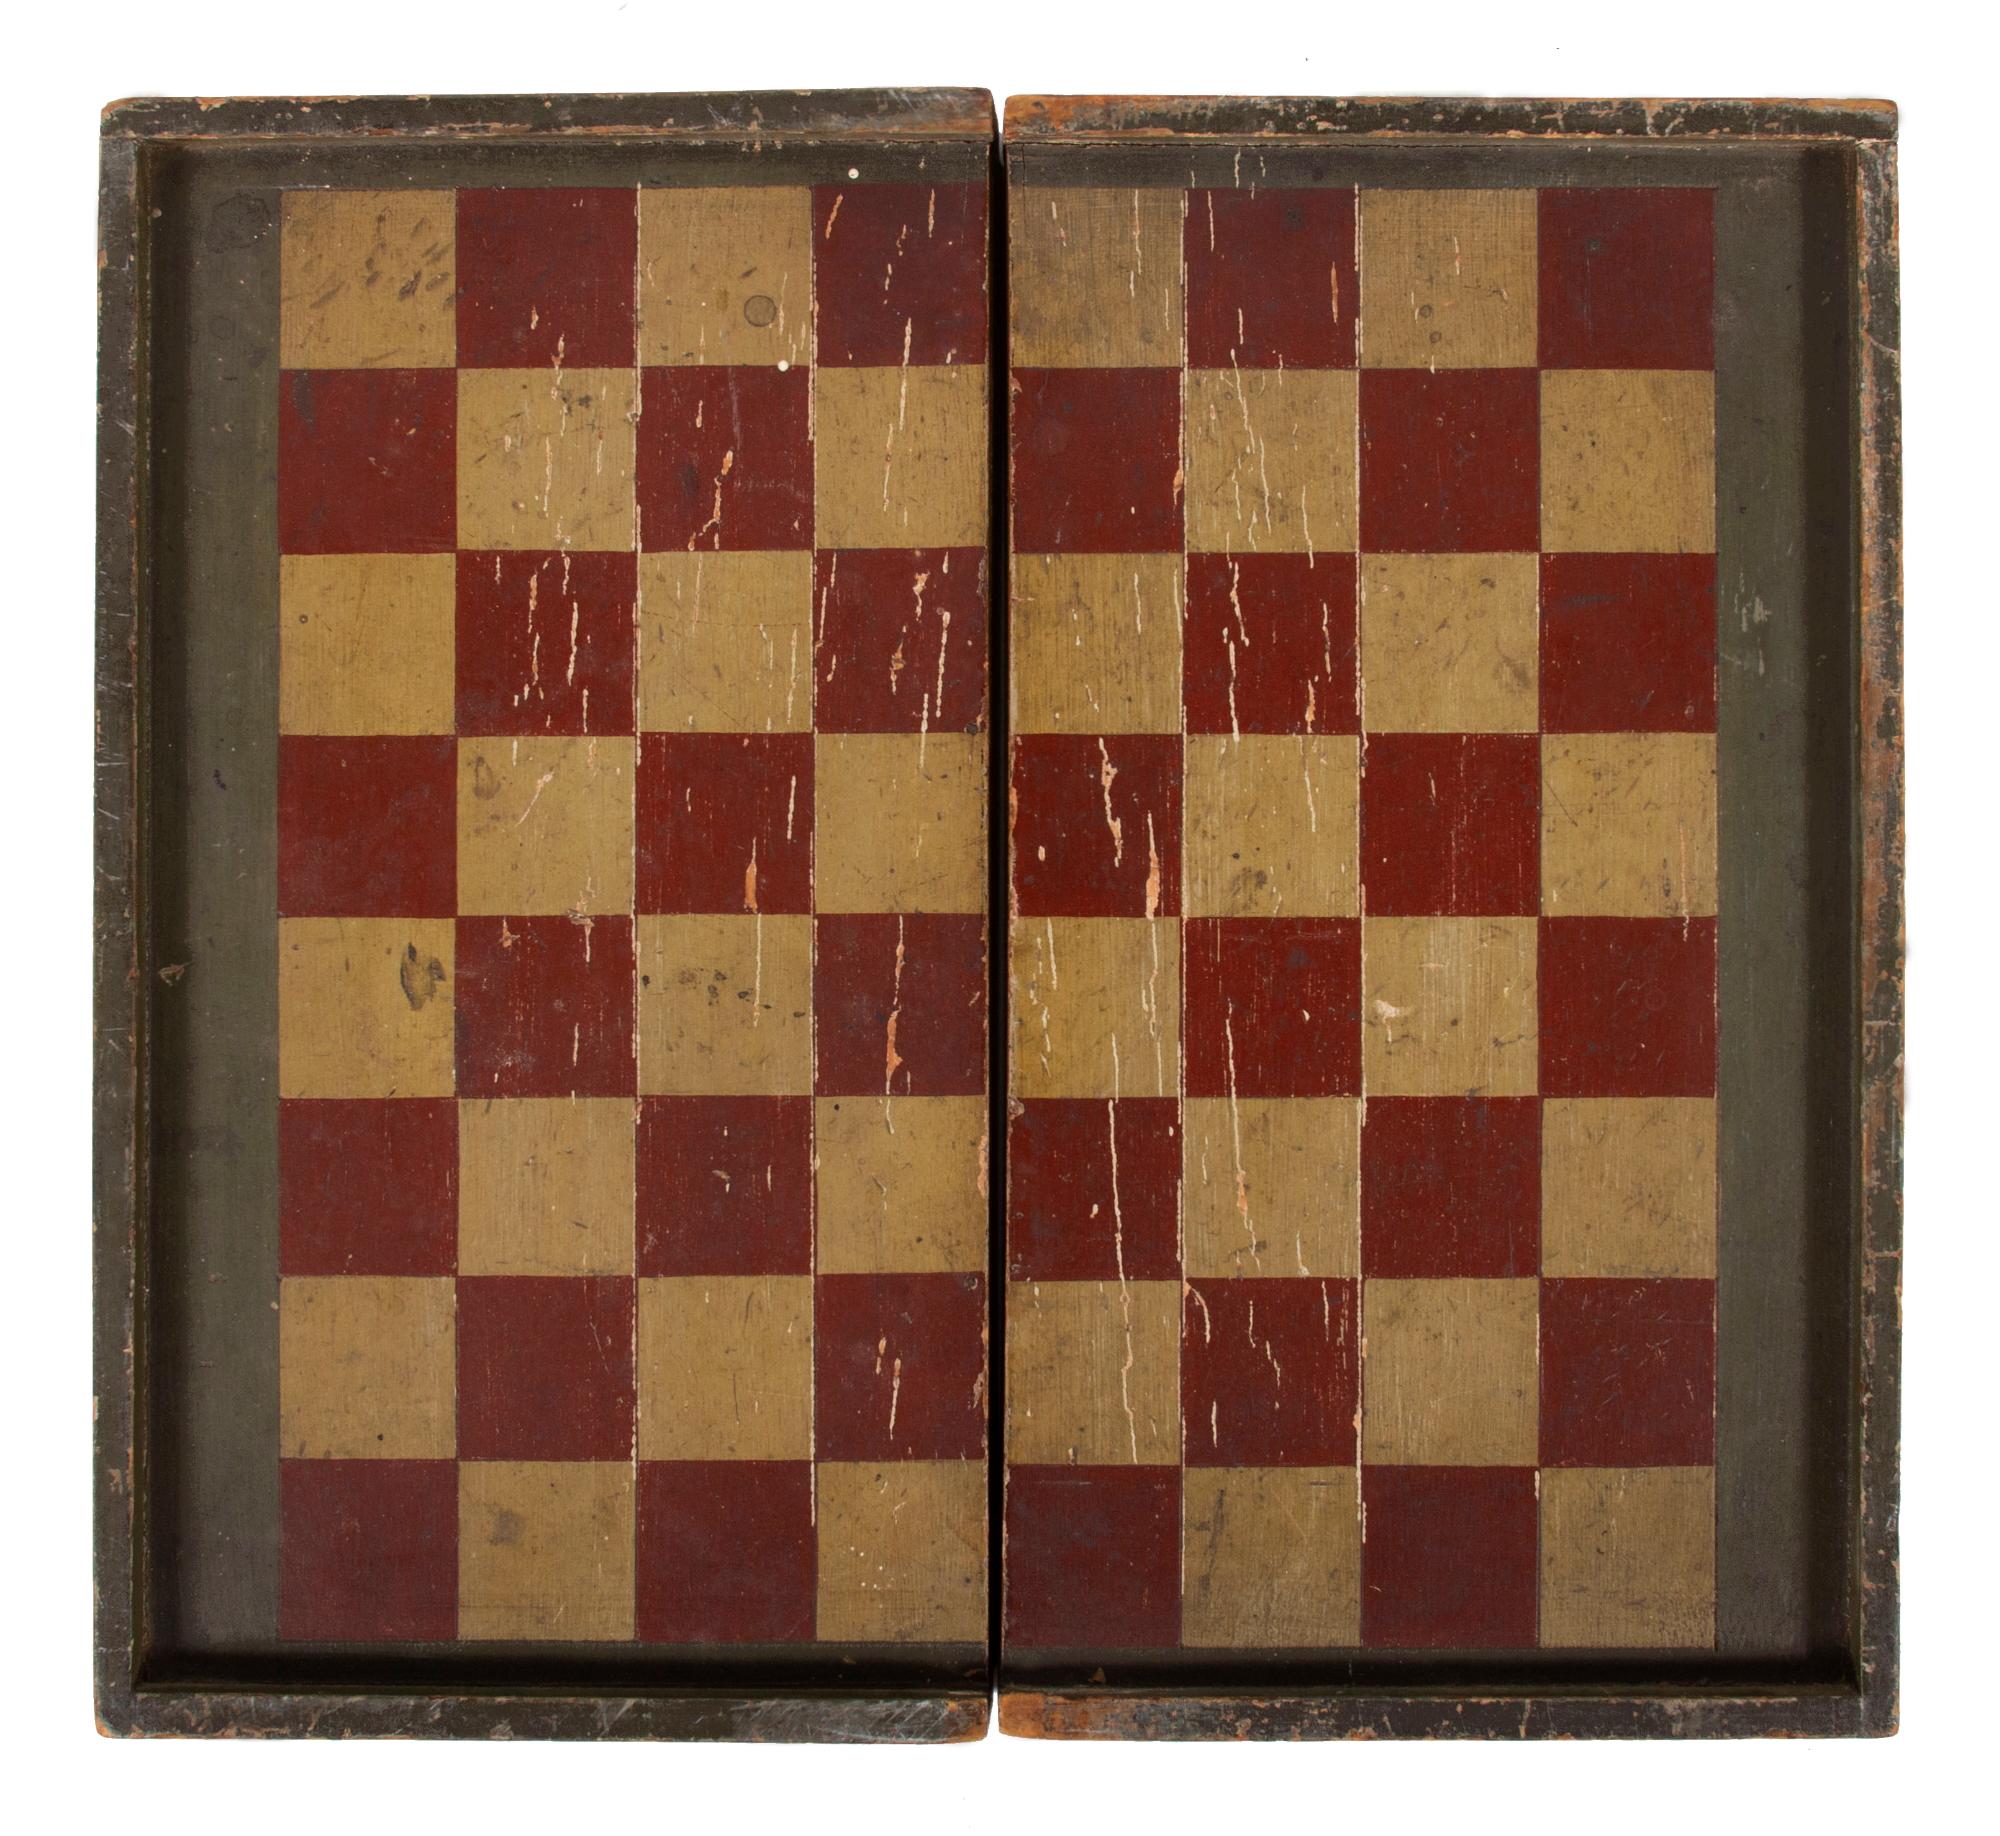 Plateau de backgammon pliant peint en rouge, noir et ocre blanc avec des médaillons en forme de feuilles, vers 1870-1890

Jeu de backgammon et de dames américain, en bois tendre, avec un coffret assemblé à la main à une extrémité et cloué à